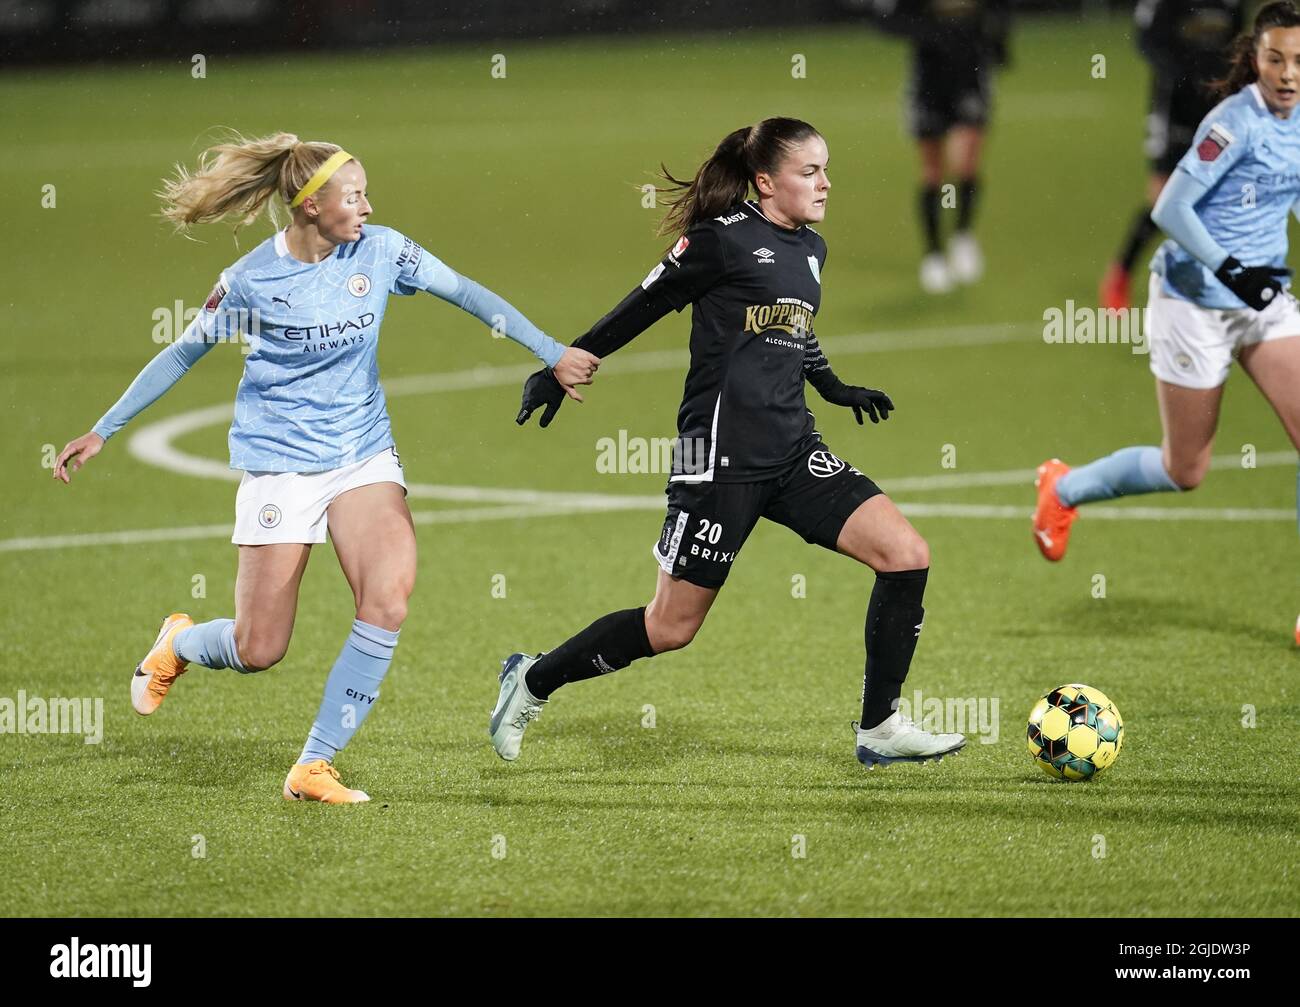 CORRECTION DU NOM DU JOUEUR Chloe Kelly (L) de Manchester City chases  Hannah Wijk de Göteborg pendant le match de football féminin de la Ligue  des champions de 32 1ère partie entre